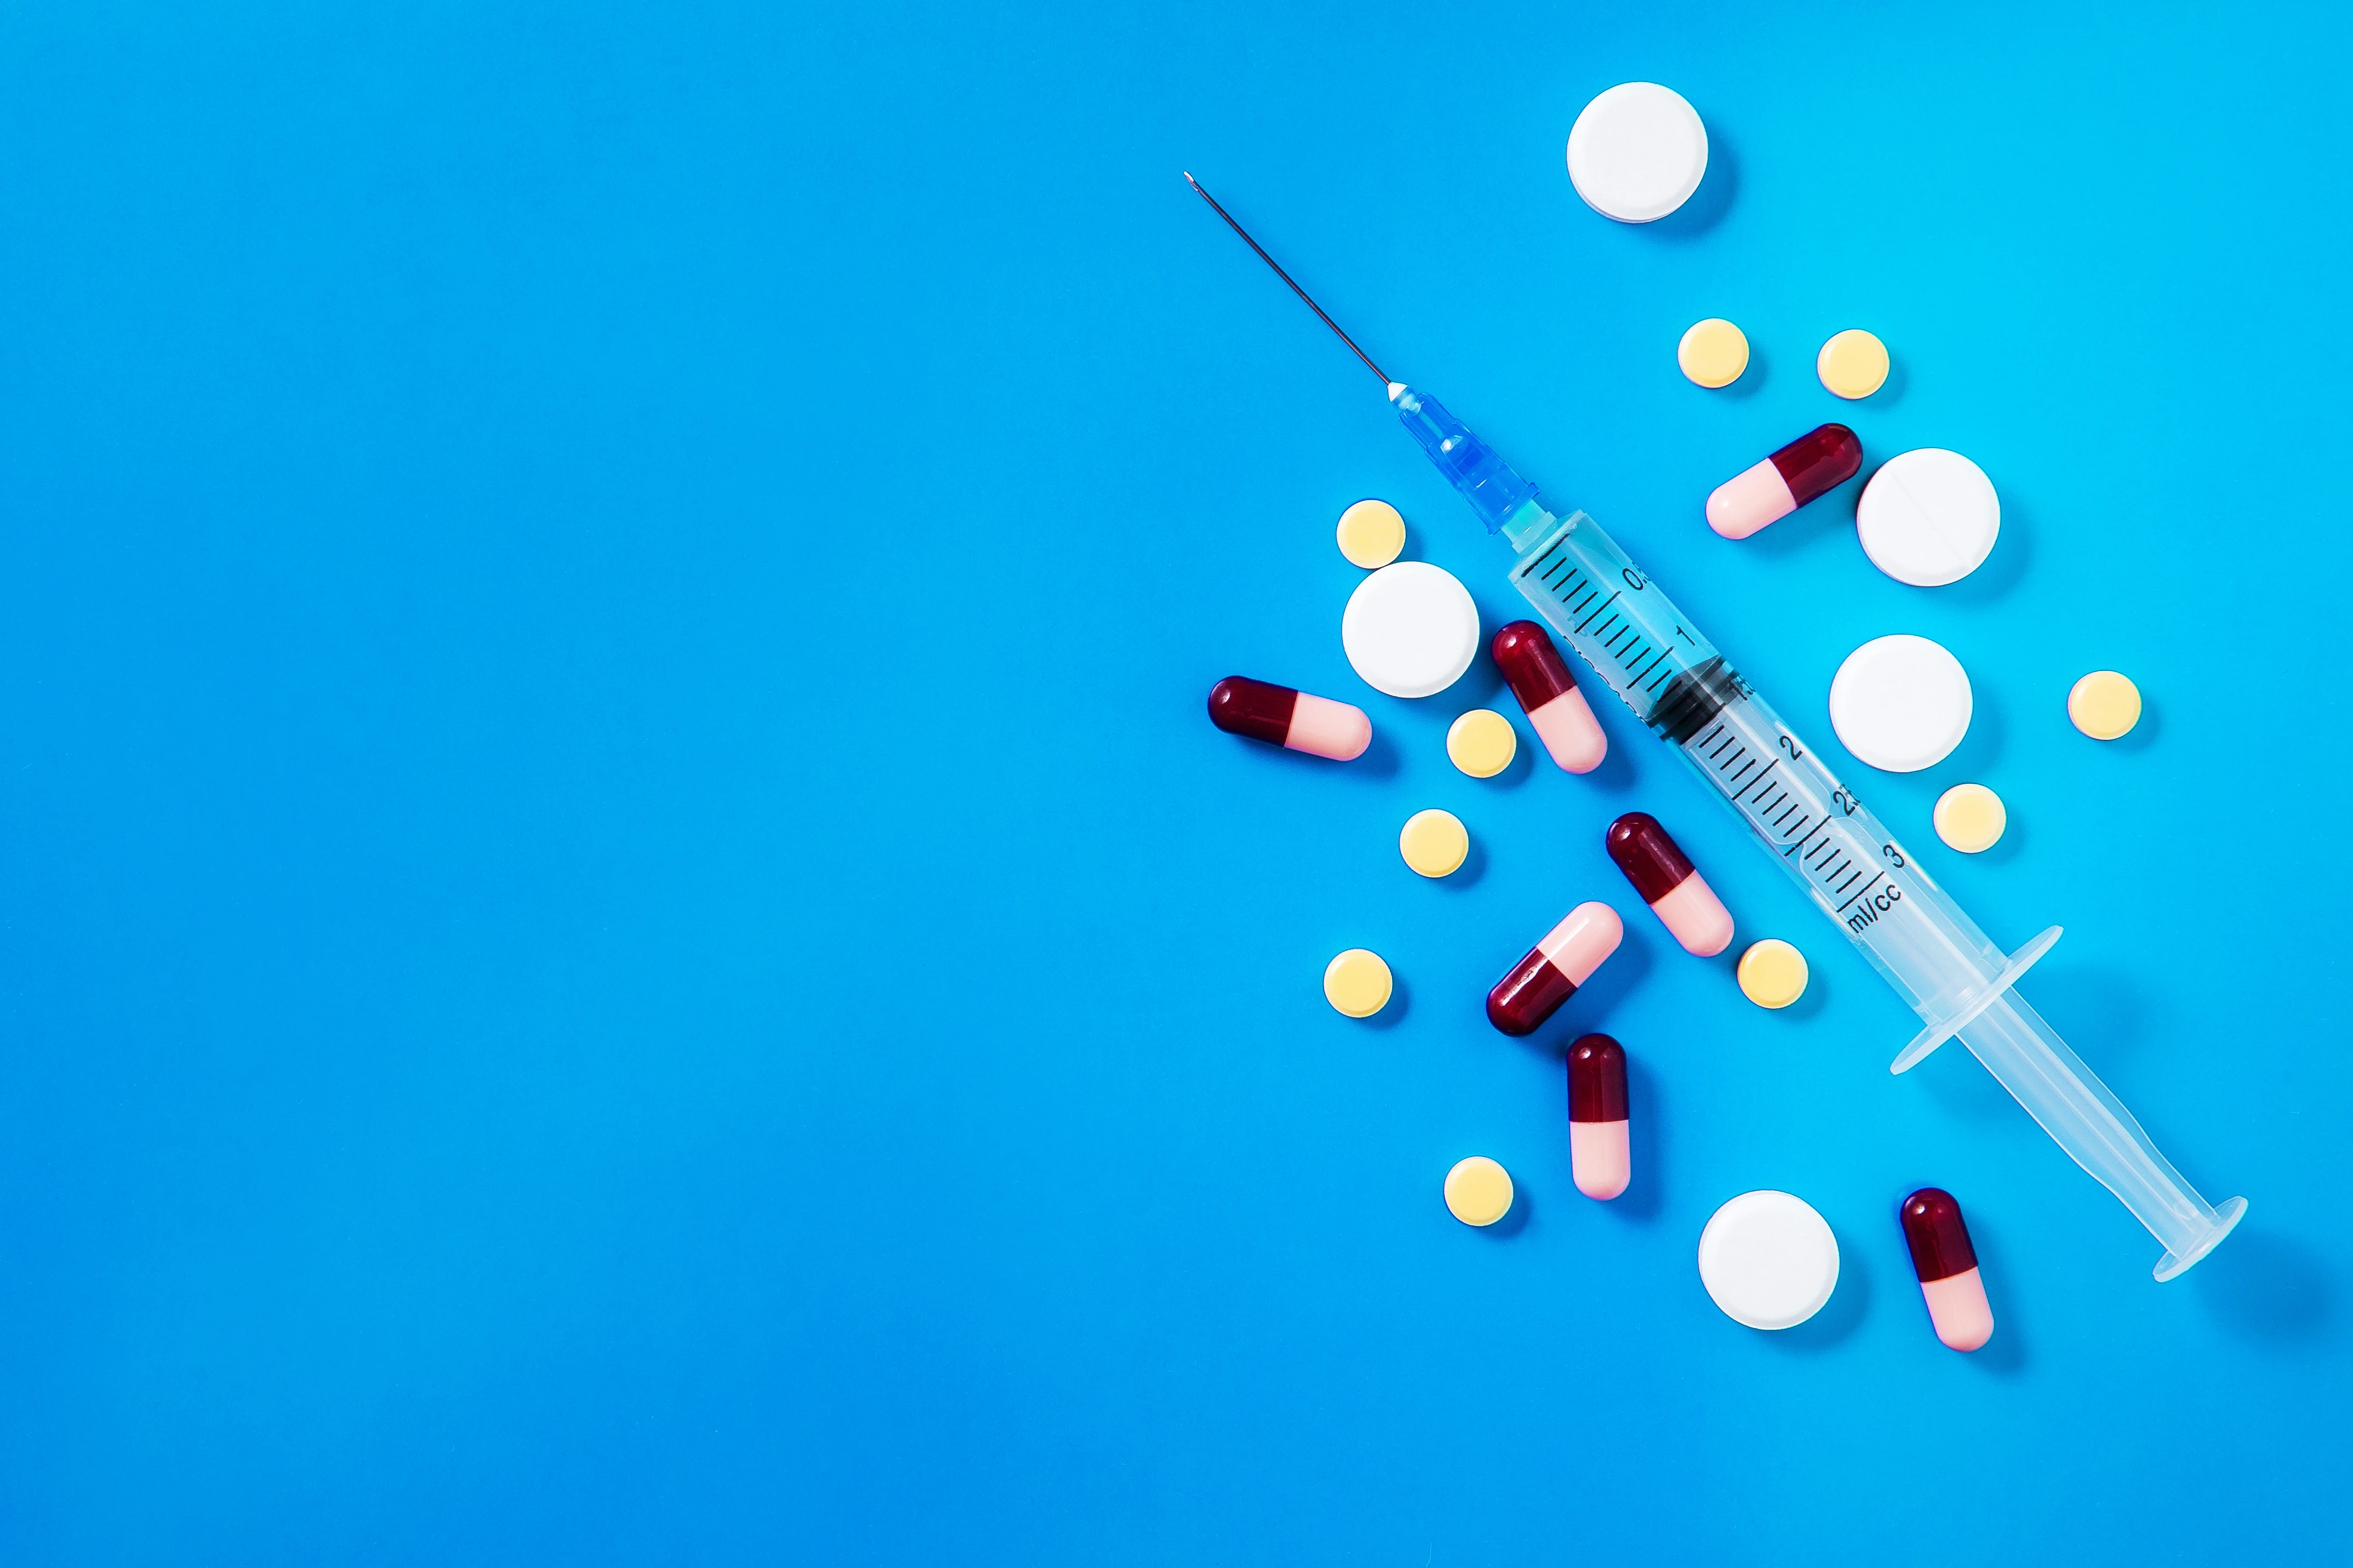 © Medikament oder Impfstoff, Therapie oder Prävention – worin liegt der Unterschied und woran wird geforscht?